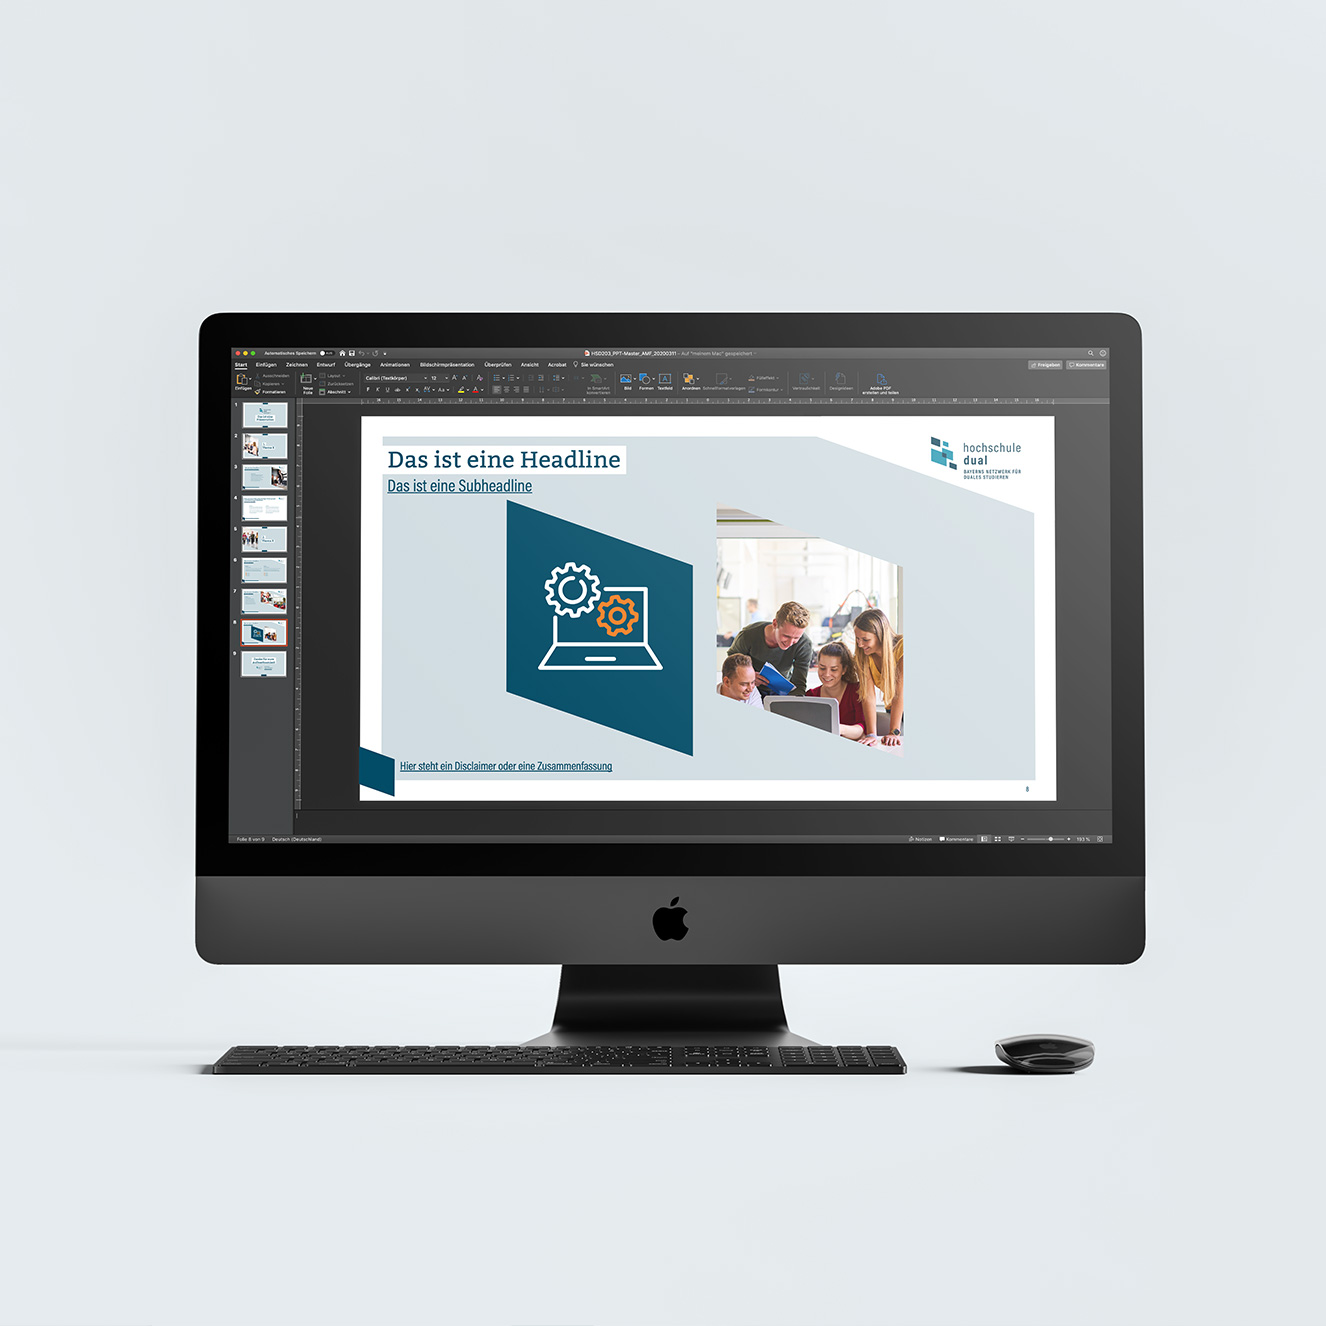 hochschule dual Corporate Design-Bildschirm-Praesentation-PowerPoint